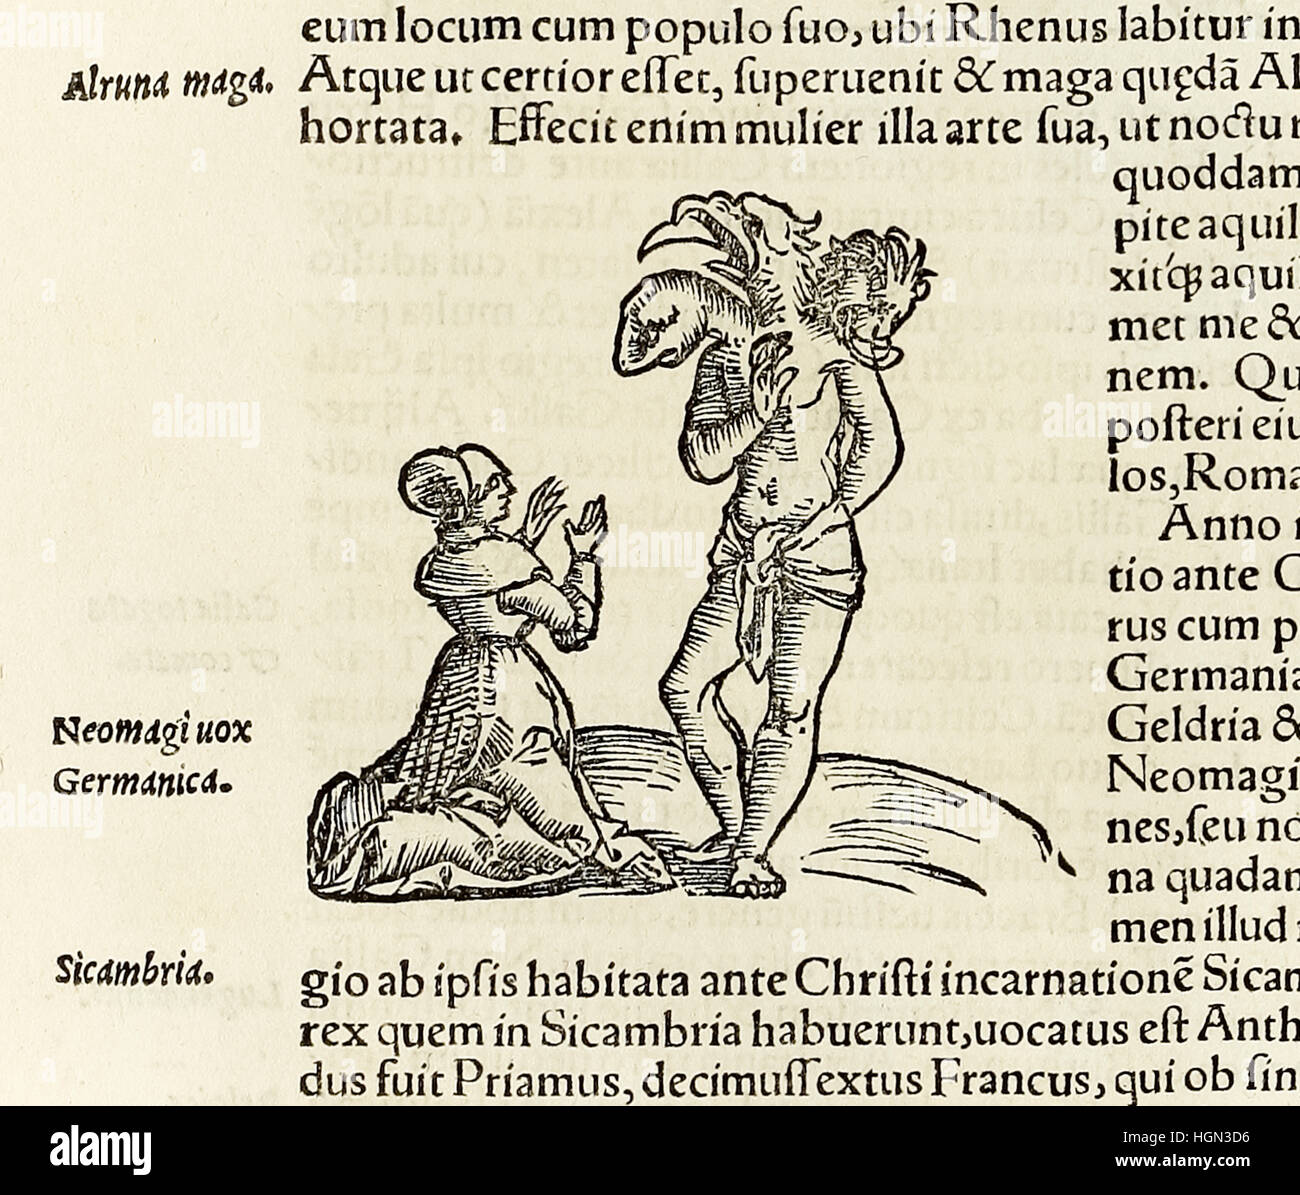 Una strega citazione a tre teste demone, xilografia dal 1550 edizione di "Cosmographia' da Sebastian Munster (1488-1552). Vedere la descrizione per maggiori informazioni. Foto Stock